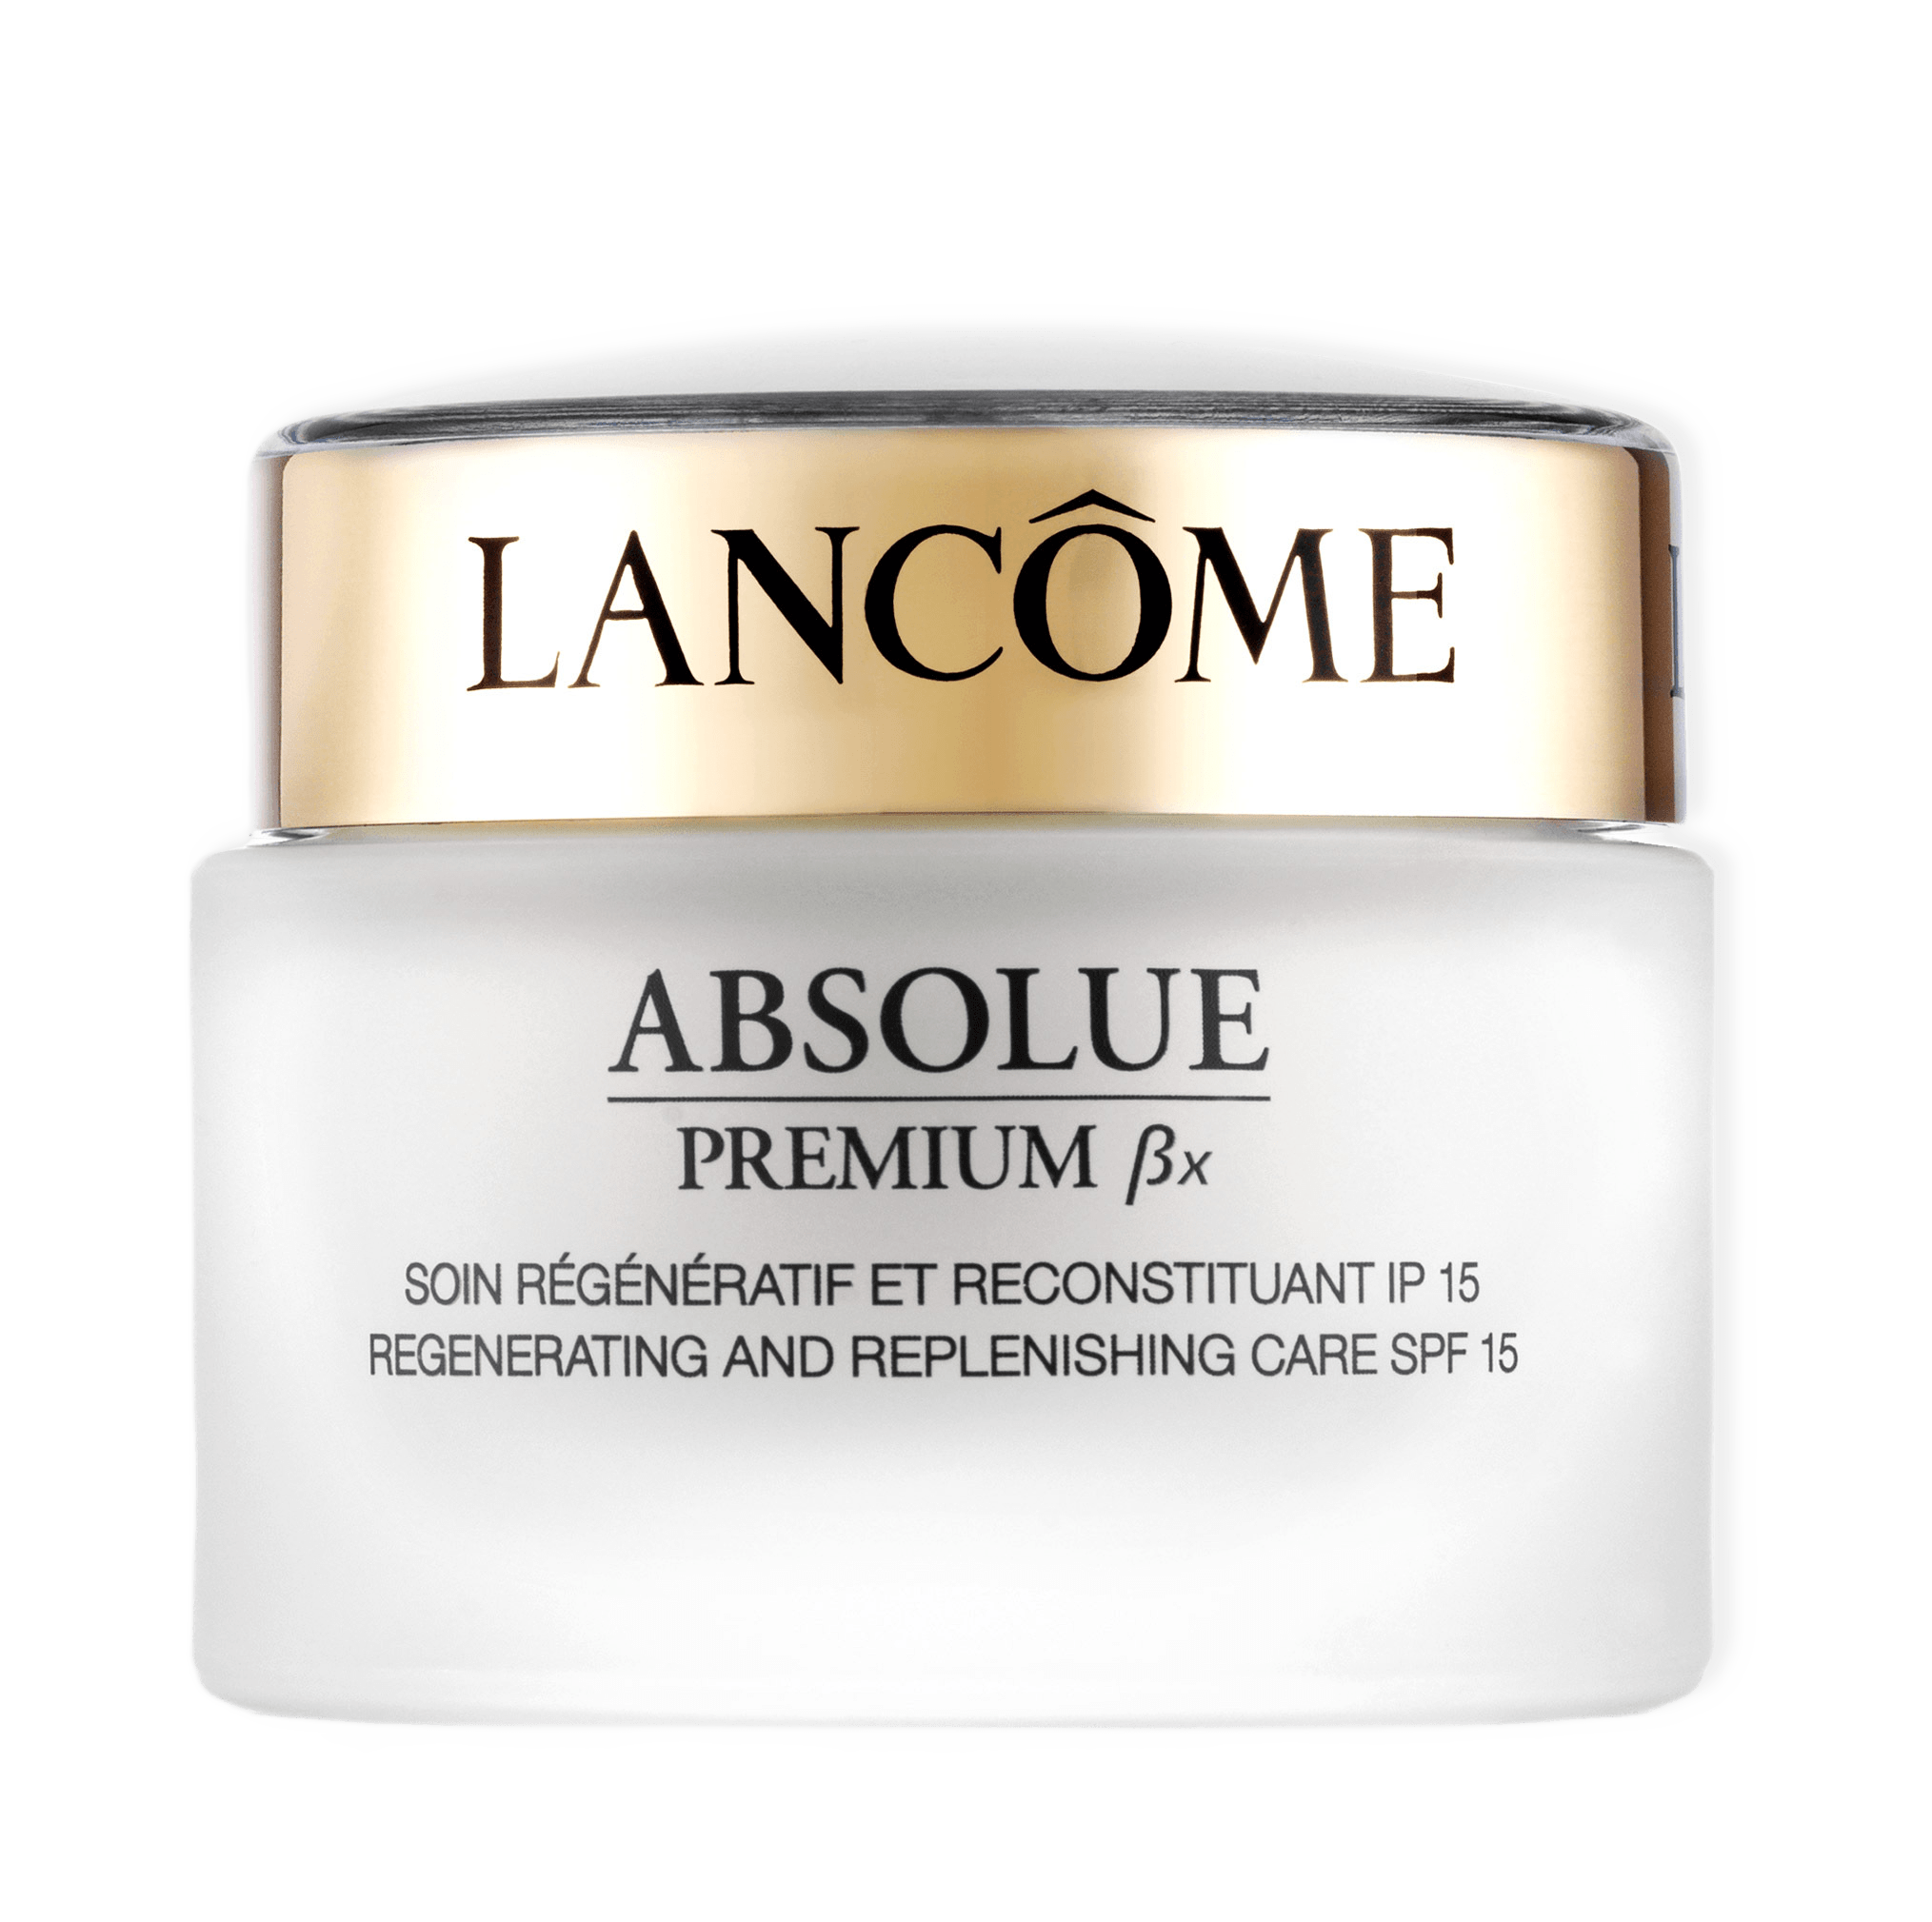 Absolue Premium βx Day Cream från Lancôme